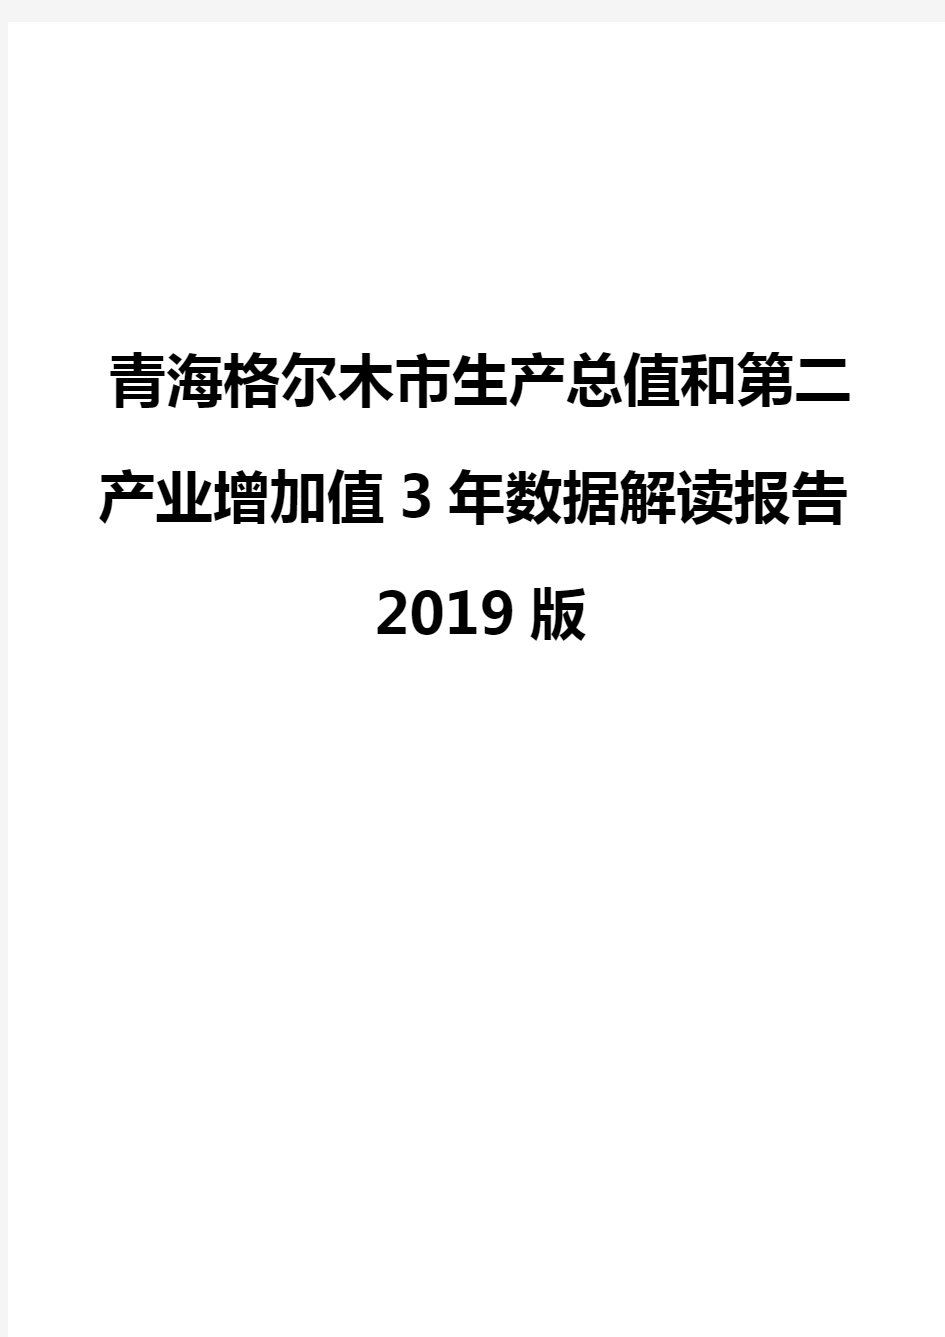 青海格尔木市生产总值和第二产业增加值3年数据解读报告2019版